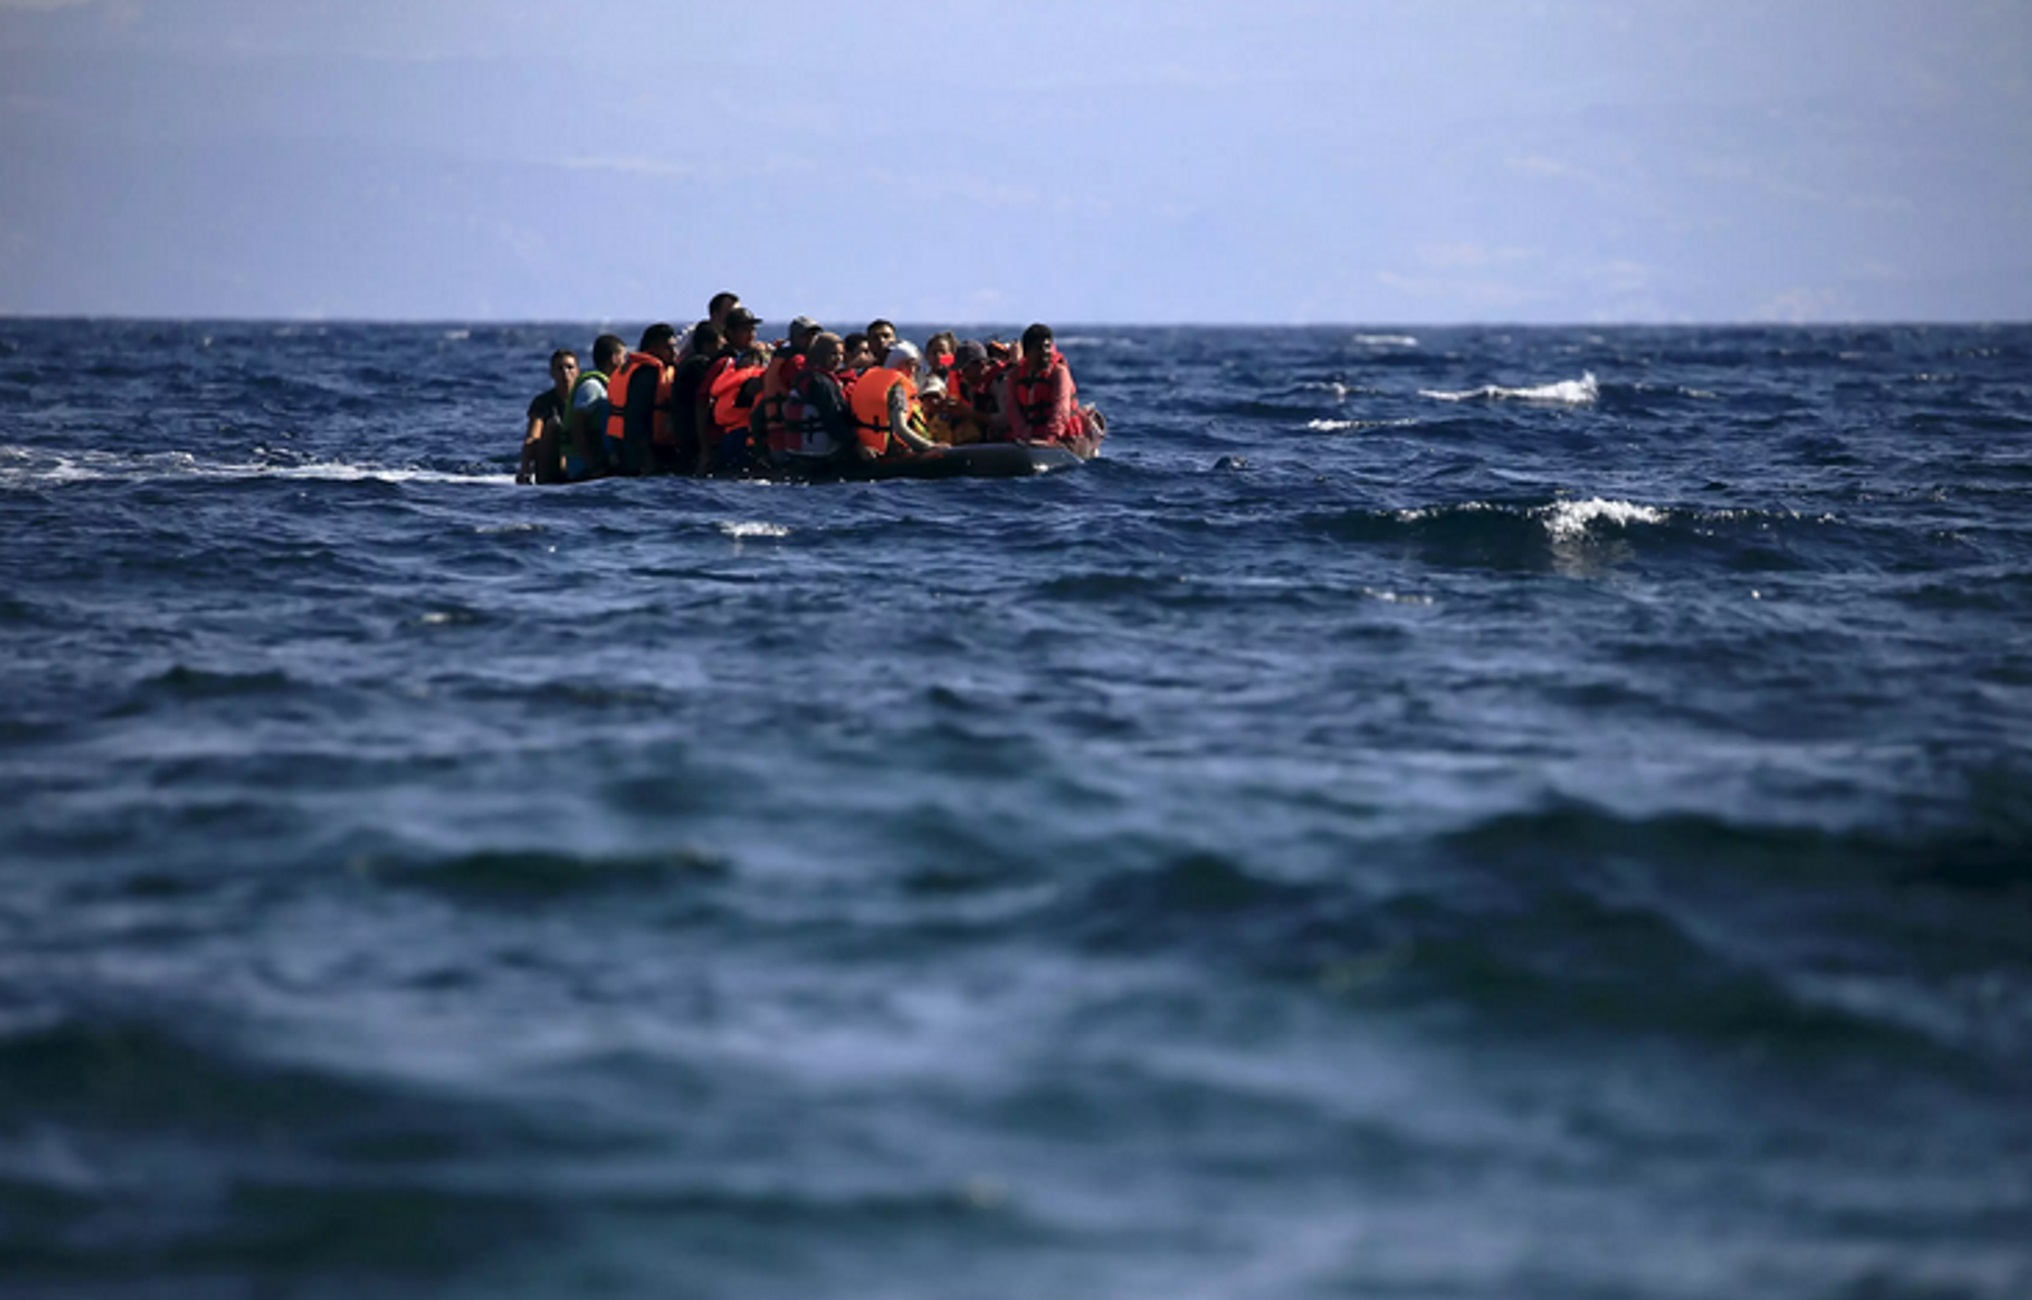 Ιταλία: Διασώθηκαν 600 μετανάστες από την ακτοφυλακή